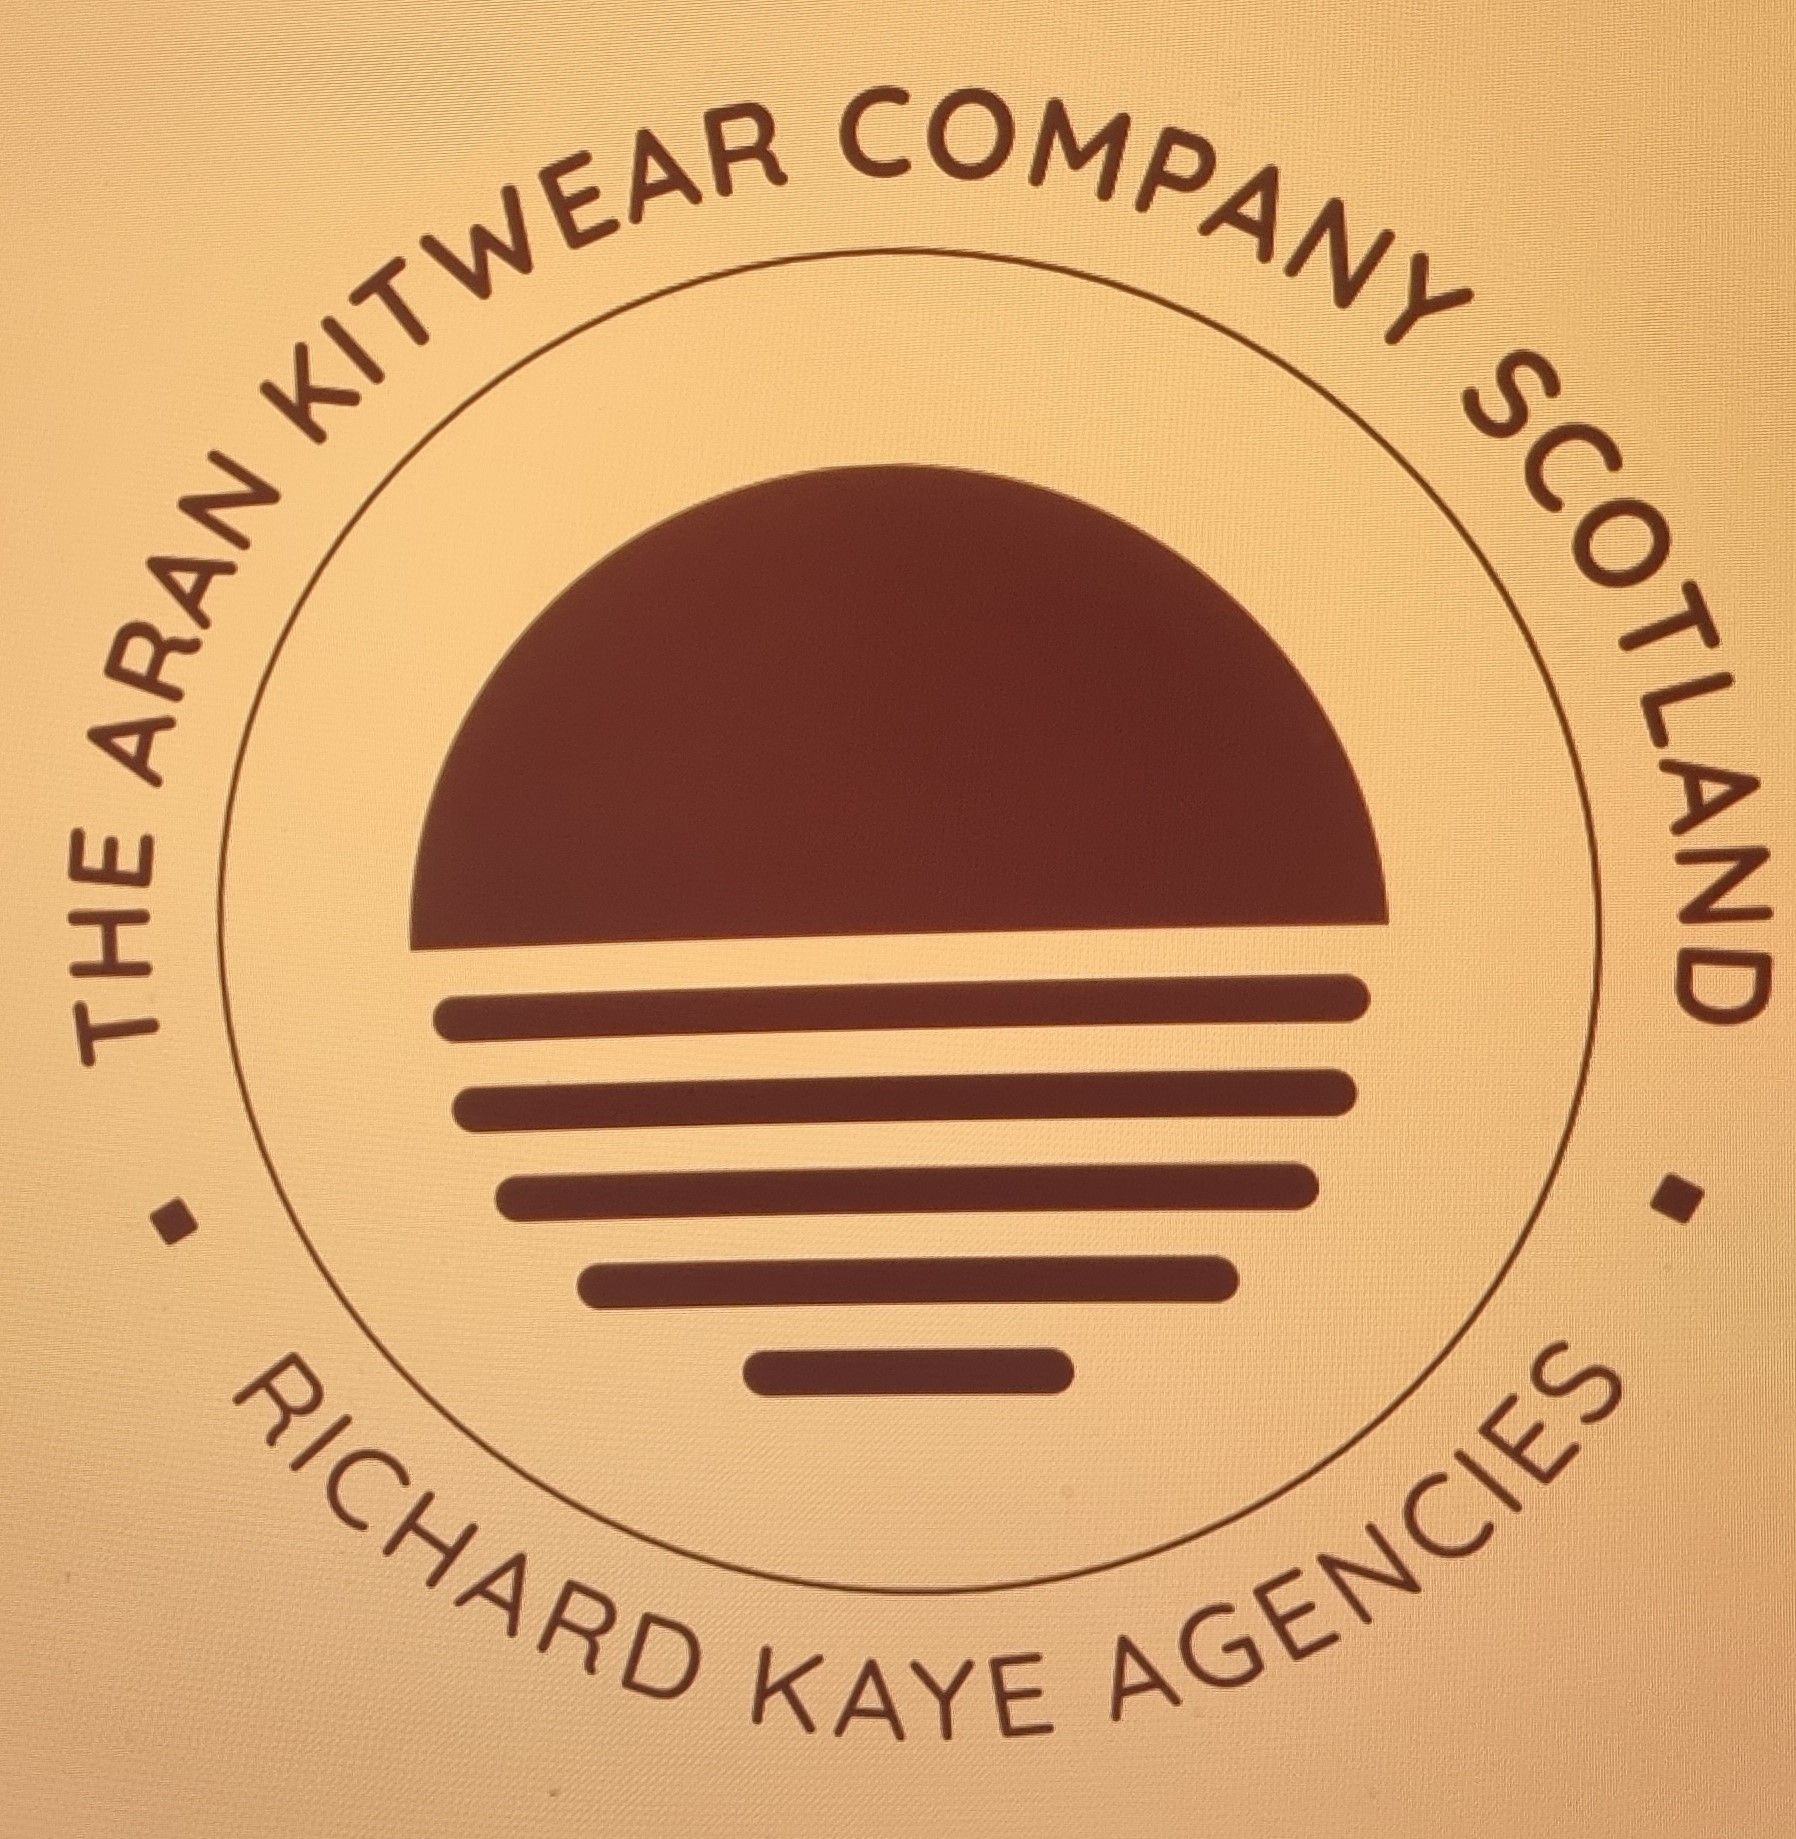 Richard Kaye Agencies